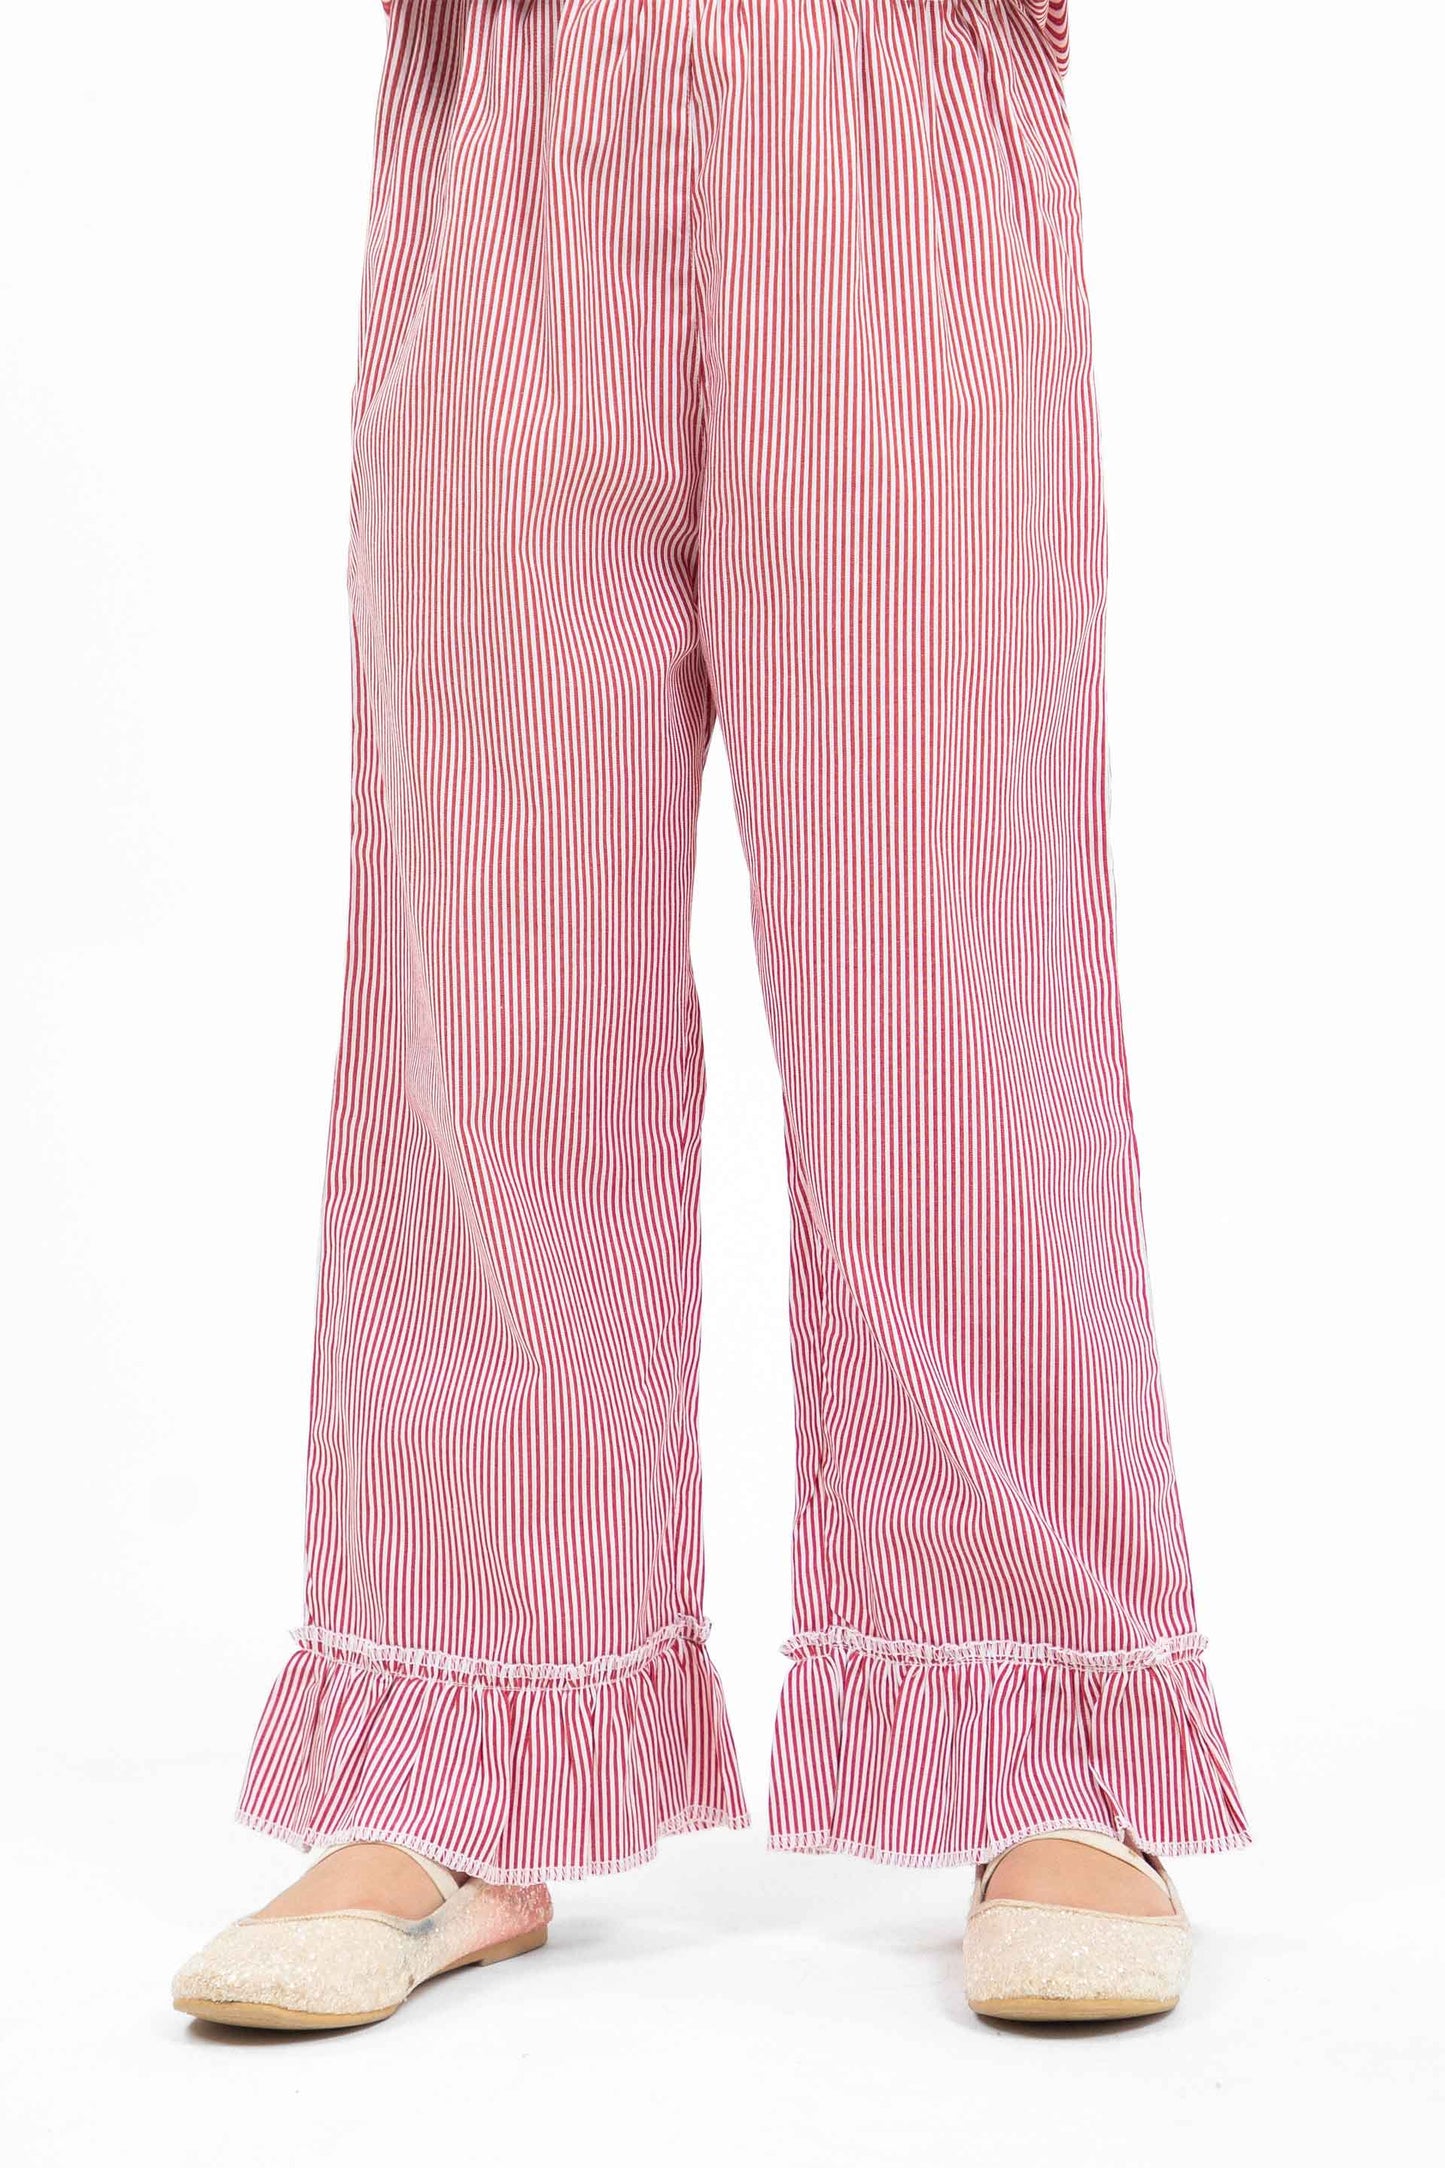 Ruffled Pants Pink